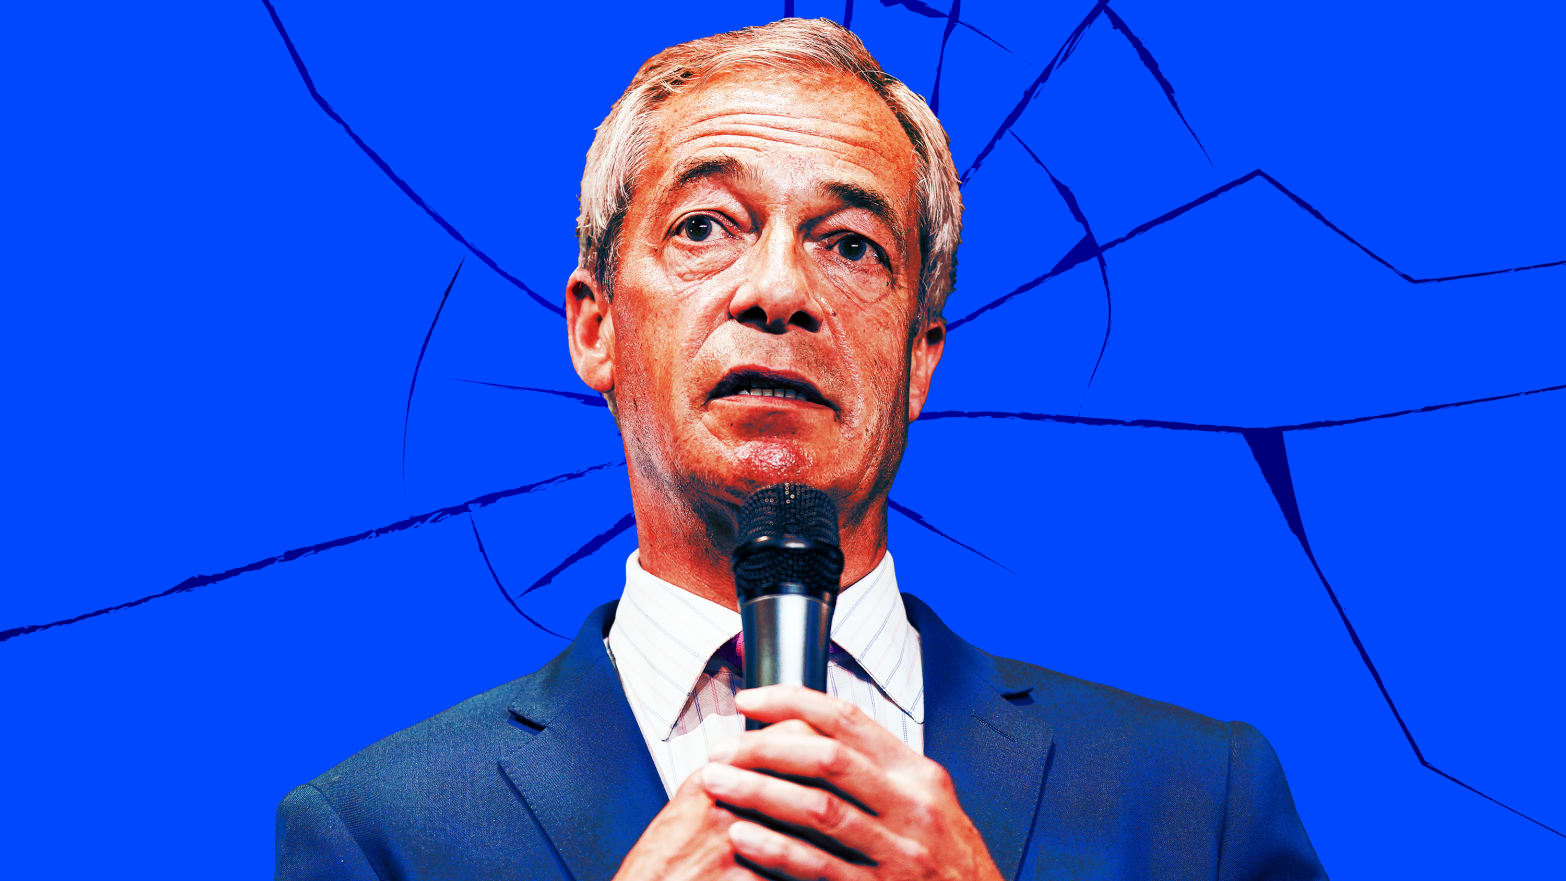 Illustration of Nigel Farage on a broken blue background